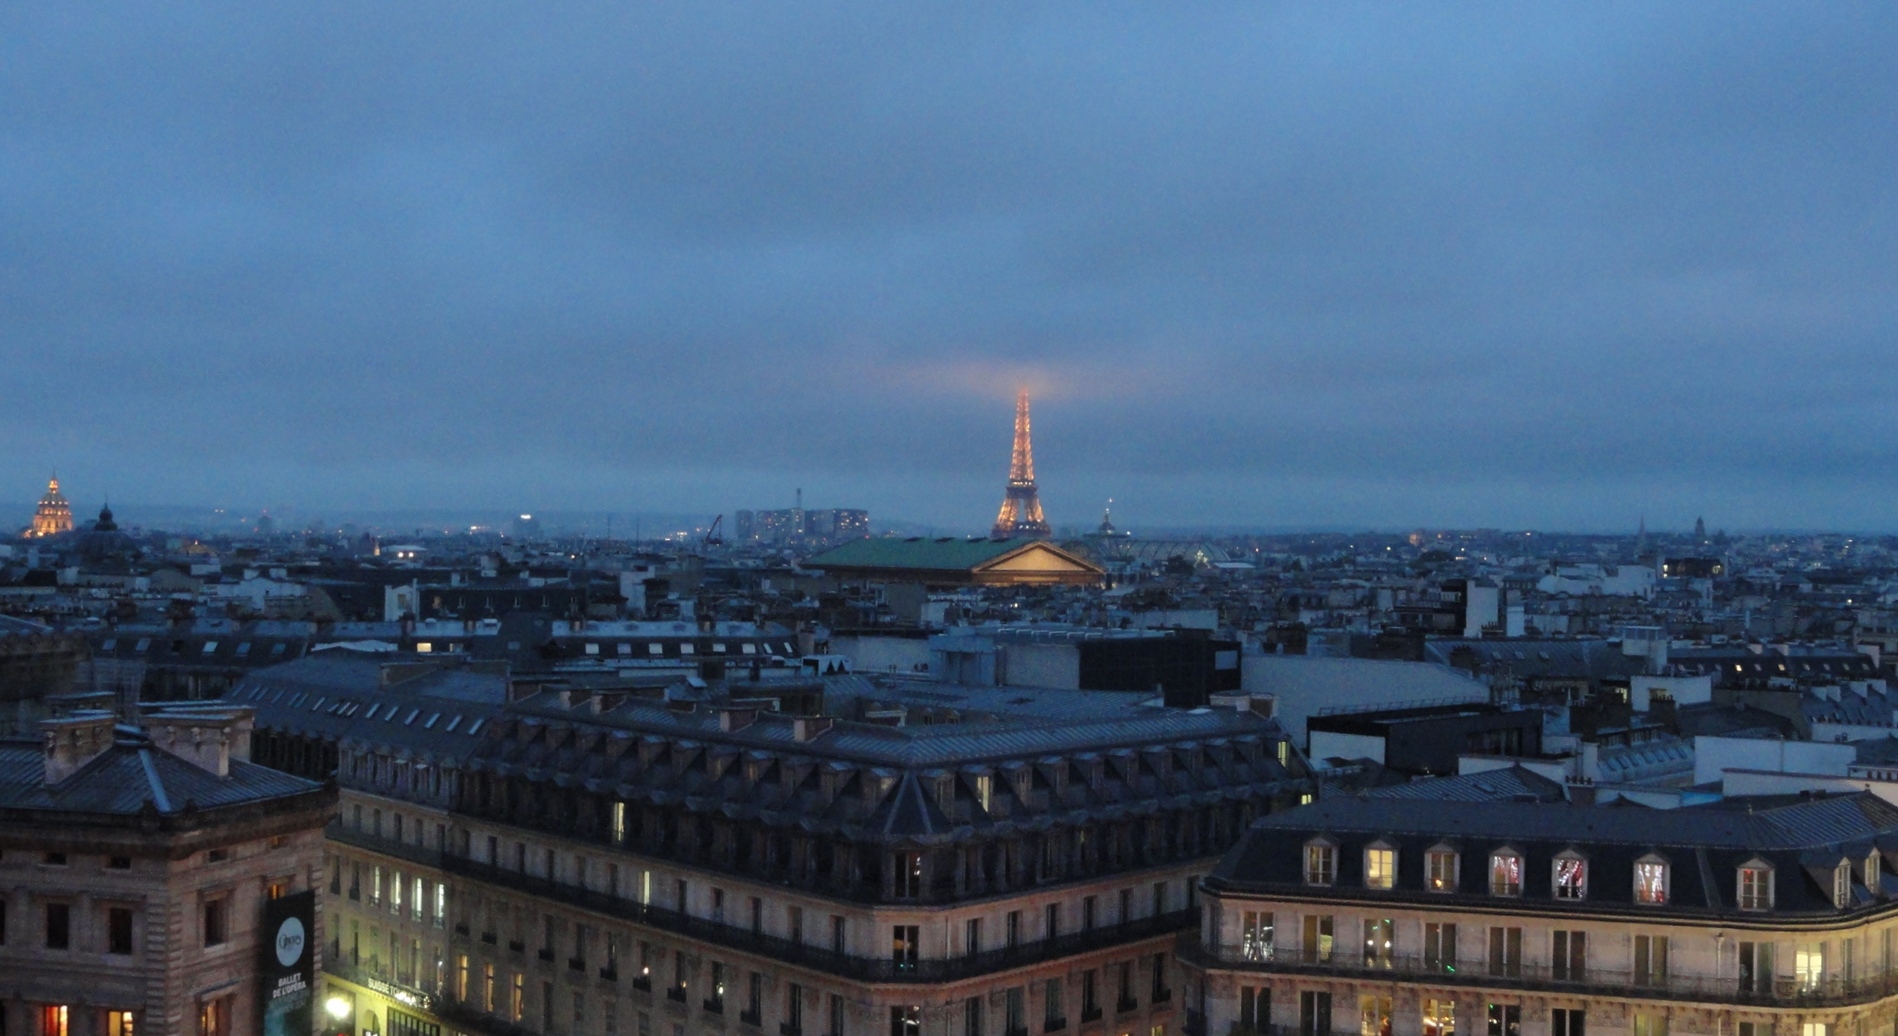 Vue de Paris depuis le tout des Galeries Lafayette - Toue Eiffel dans les nuages